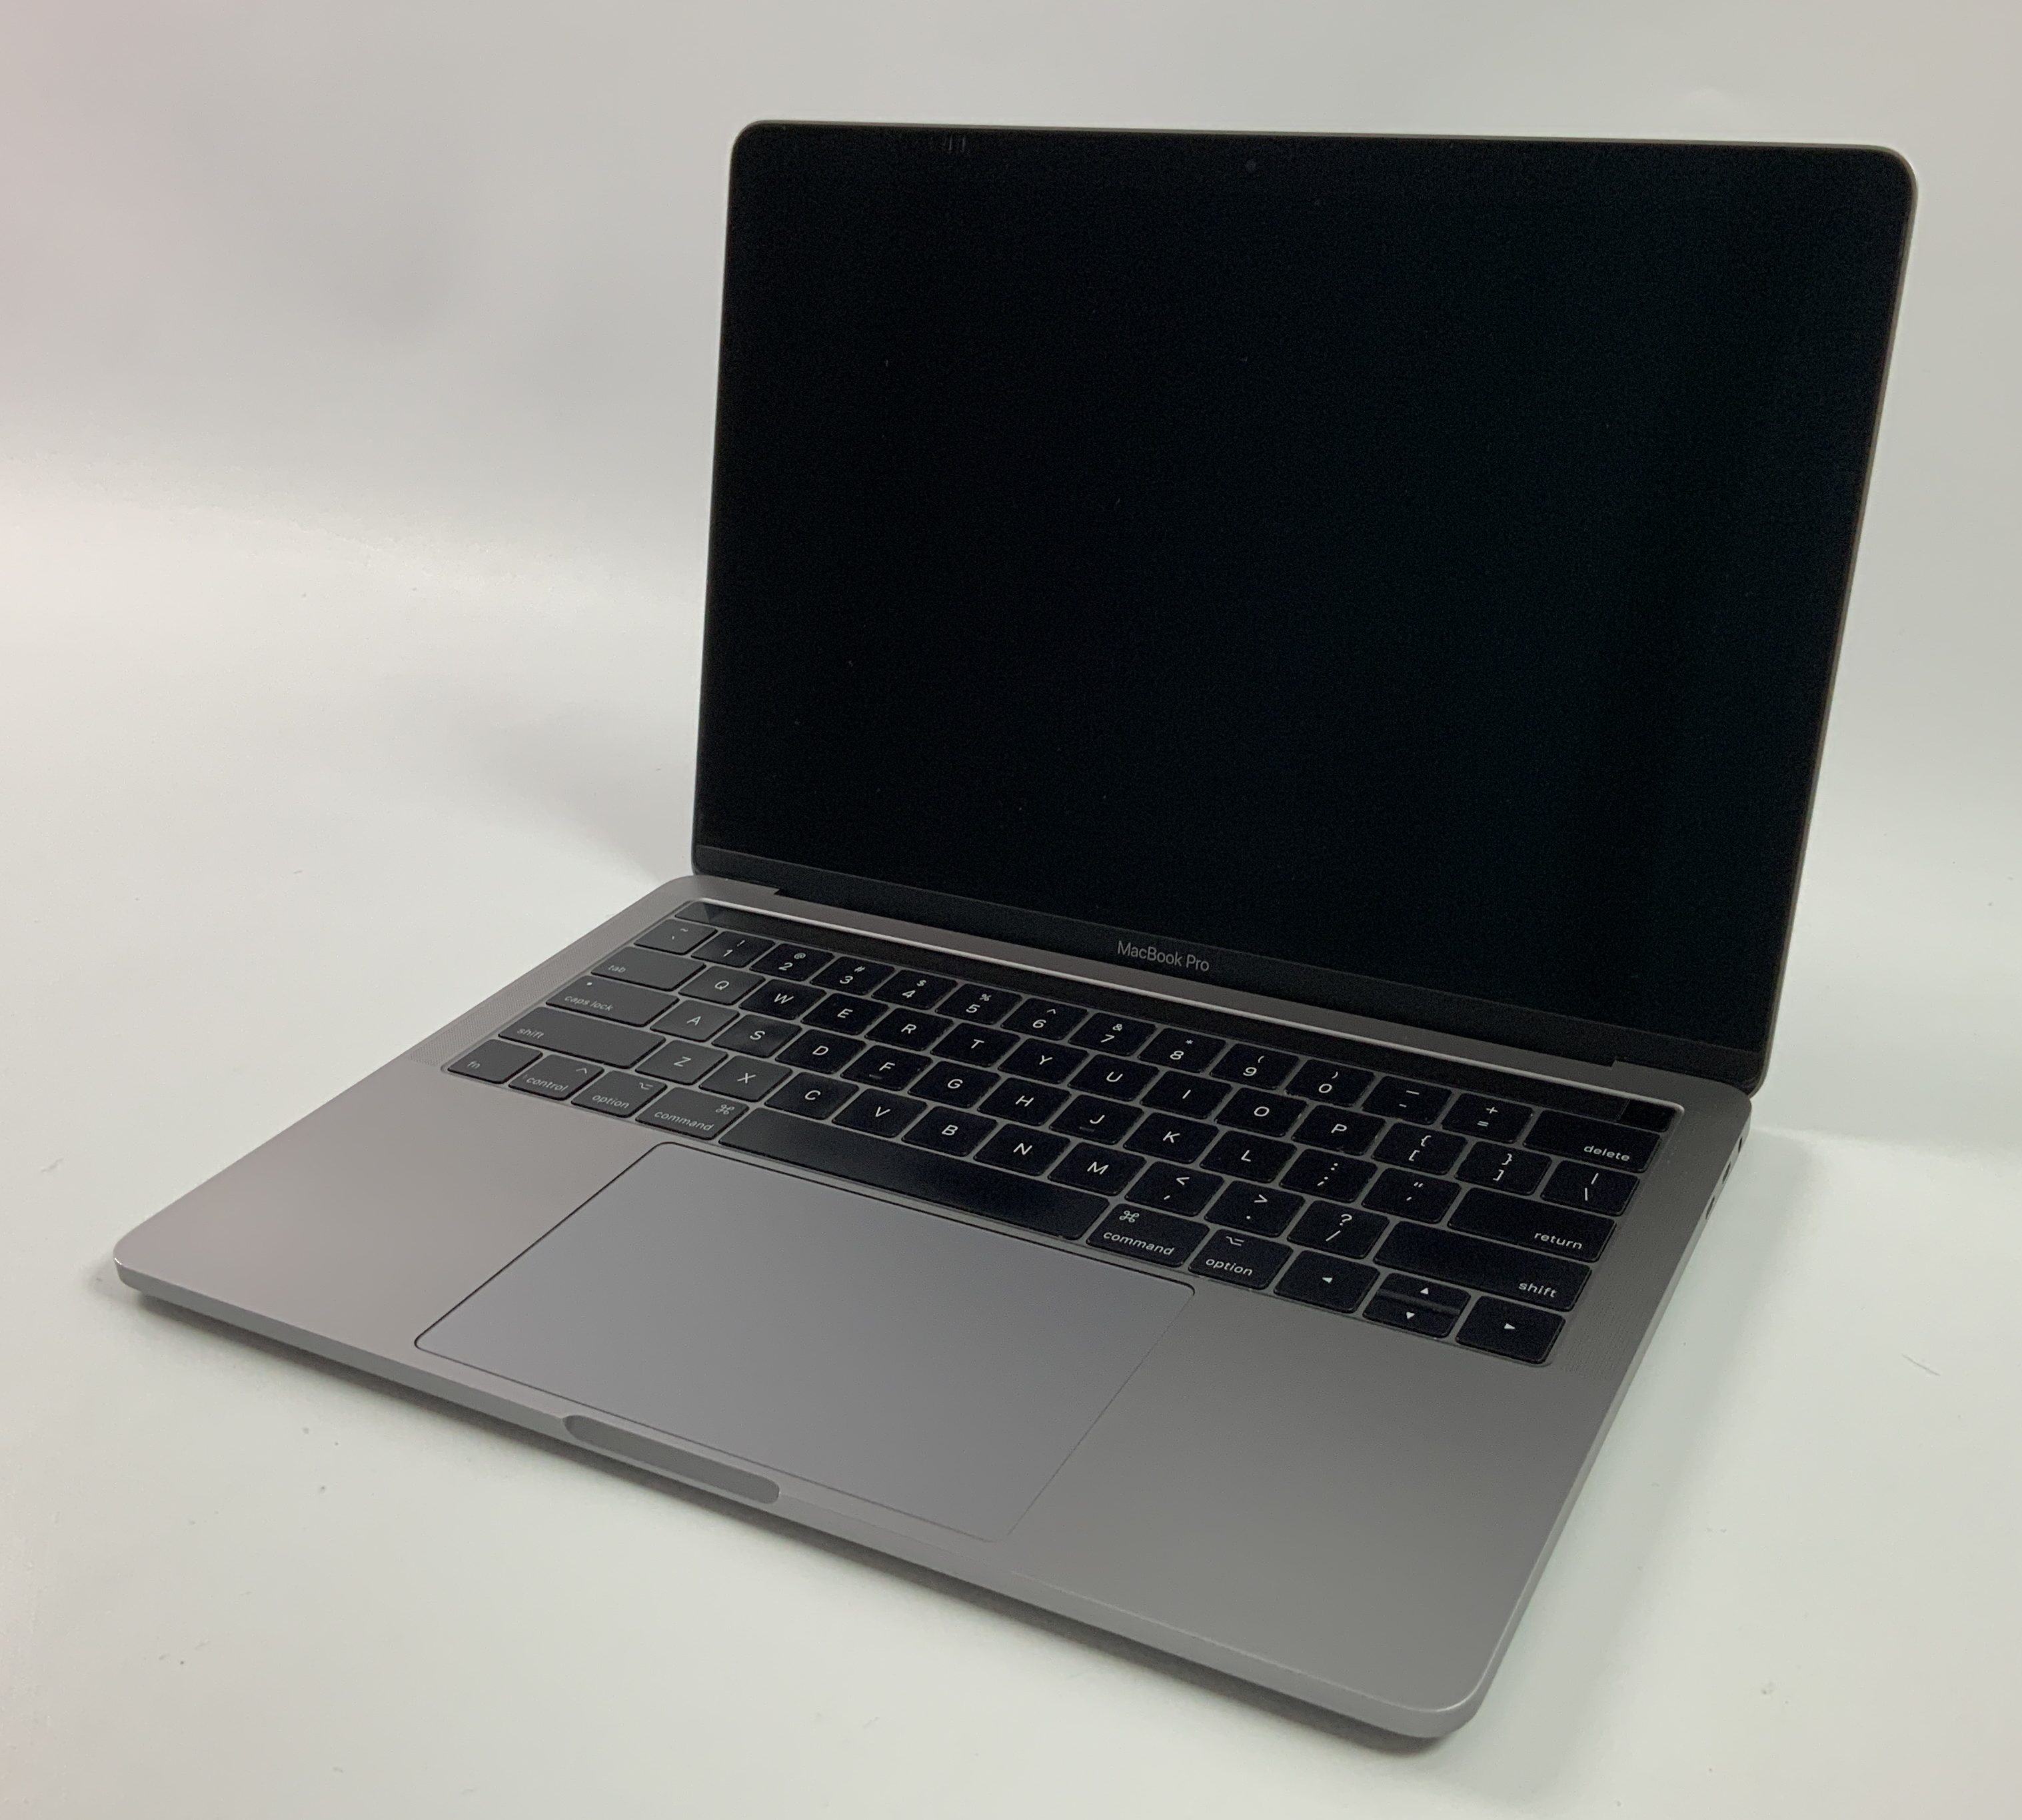 MacBook Pro 13" 4TBT Mid 2017 (Intel Core i5 3.1 GHz 8 GB RAM 256 GB SSD), Space Gray, Intel Core i5 3.1 GHz, 8 GB RAM, 256 GB SSD, obraz 1